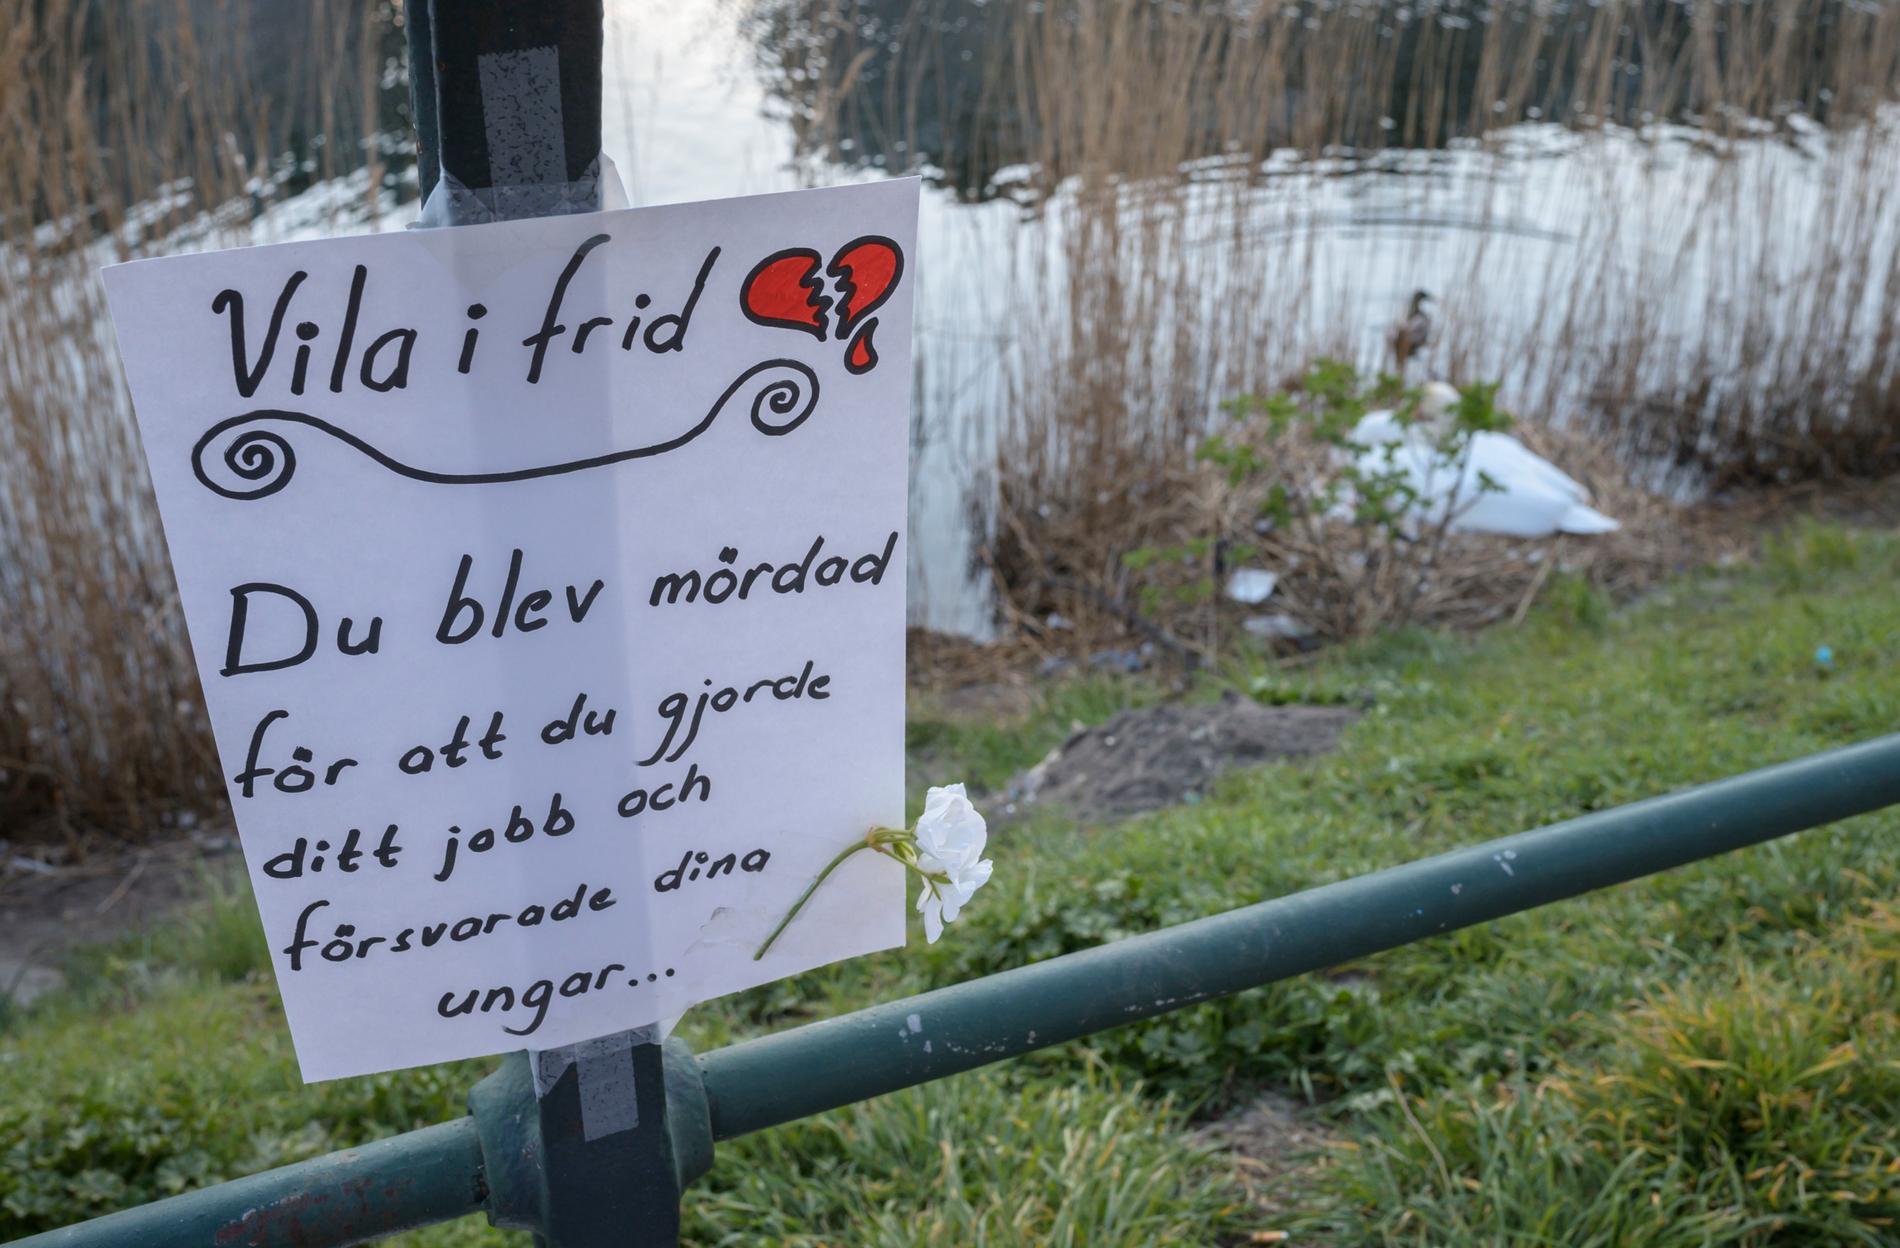 Svanmamman lämnades ensam kvar när förra svanhannen i kanalen sköts. Den lilla familjens öde berörde många i både Malmö och på andra platser i landet.